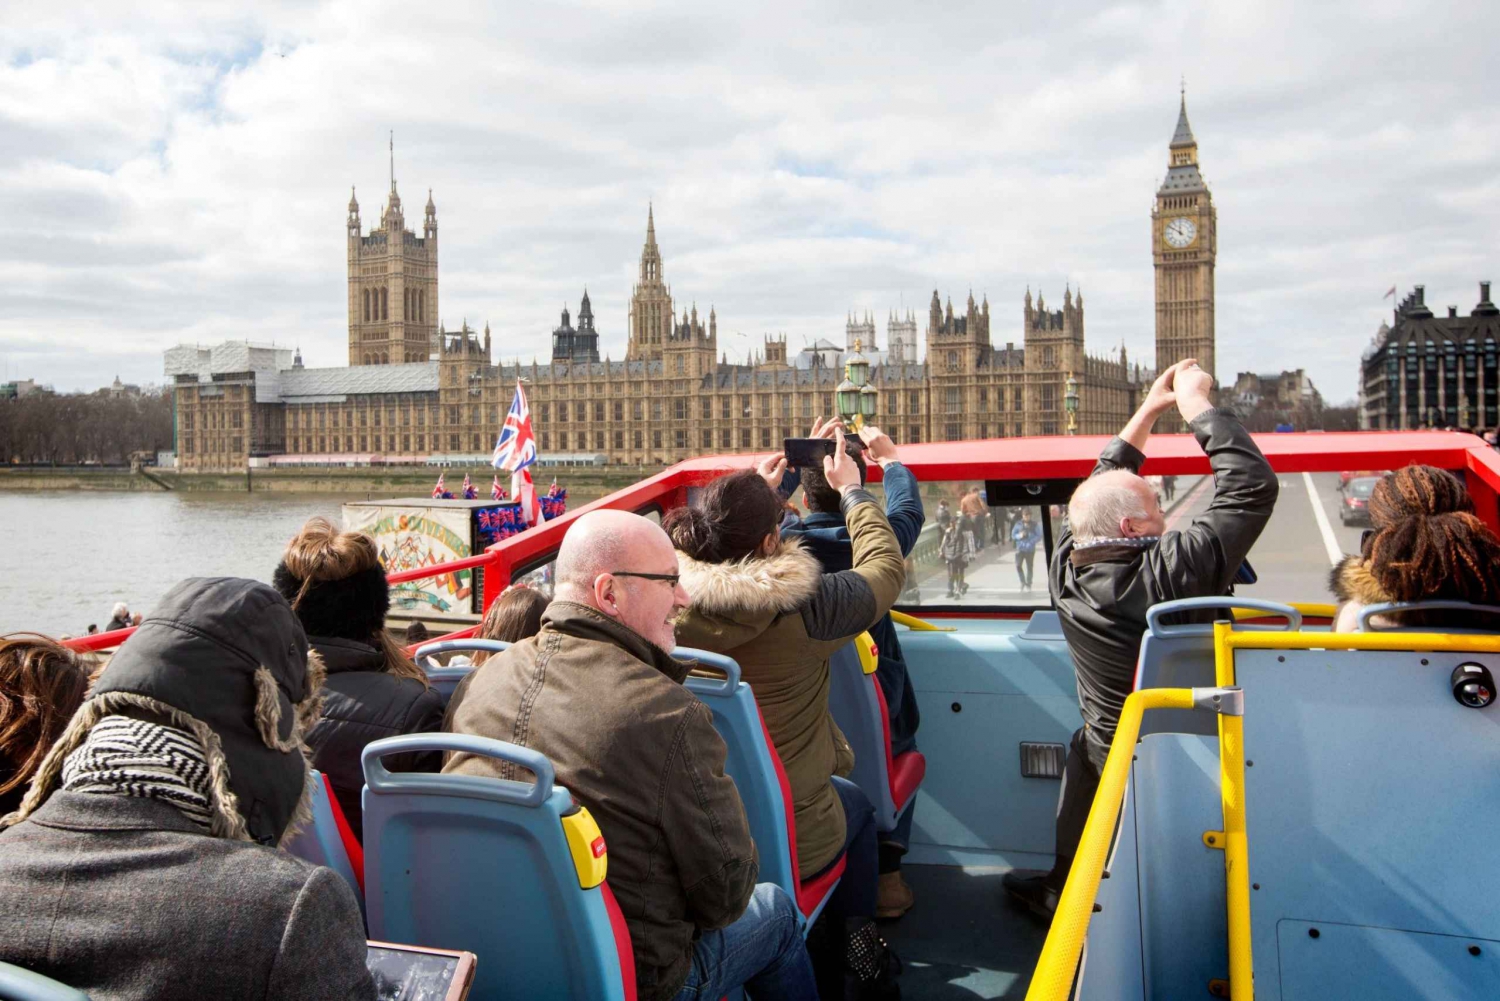 Londres: Harry Potter Walking Tour & Hop-on Hop-off Bus Tour